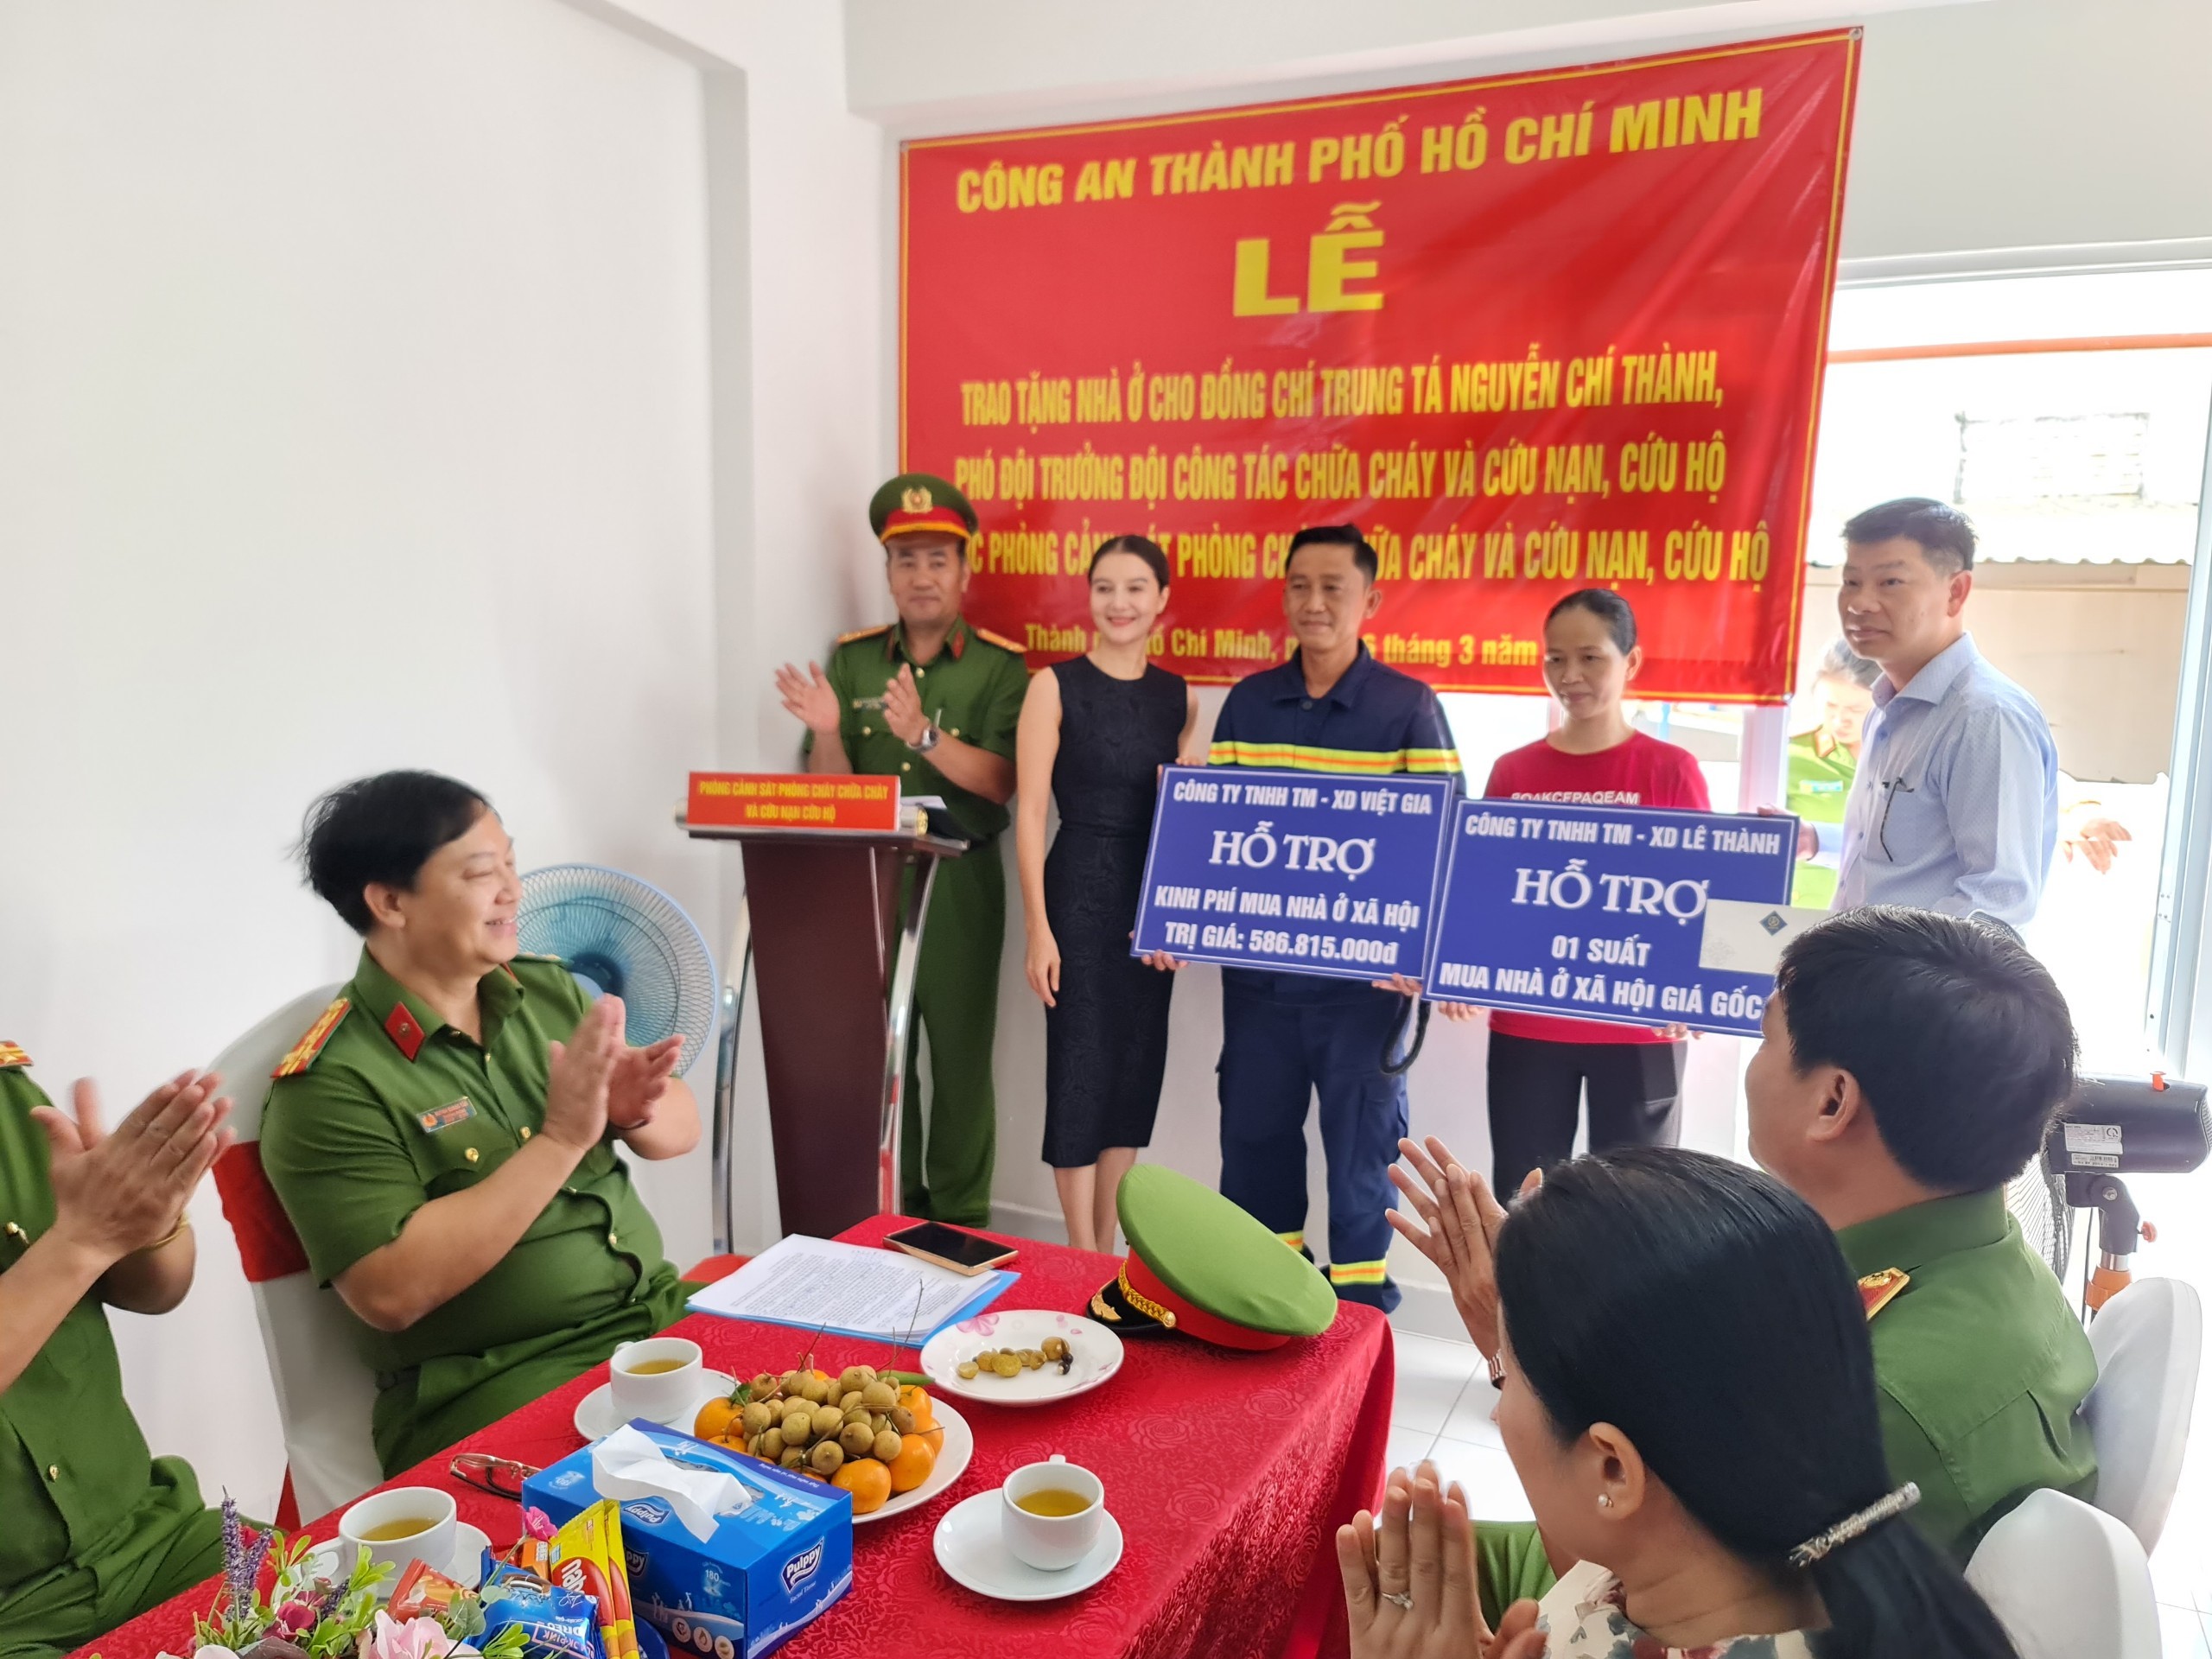 Trao tặng nhà ở xã hội cho Trung tá Nguyễn Chí Thành, người tham gia Đoàn cứu nạn tại Thổ Nhĩ Kỳ